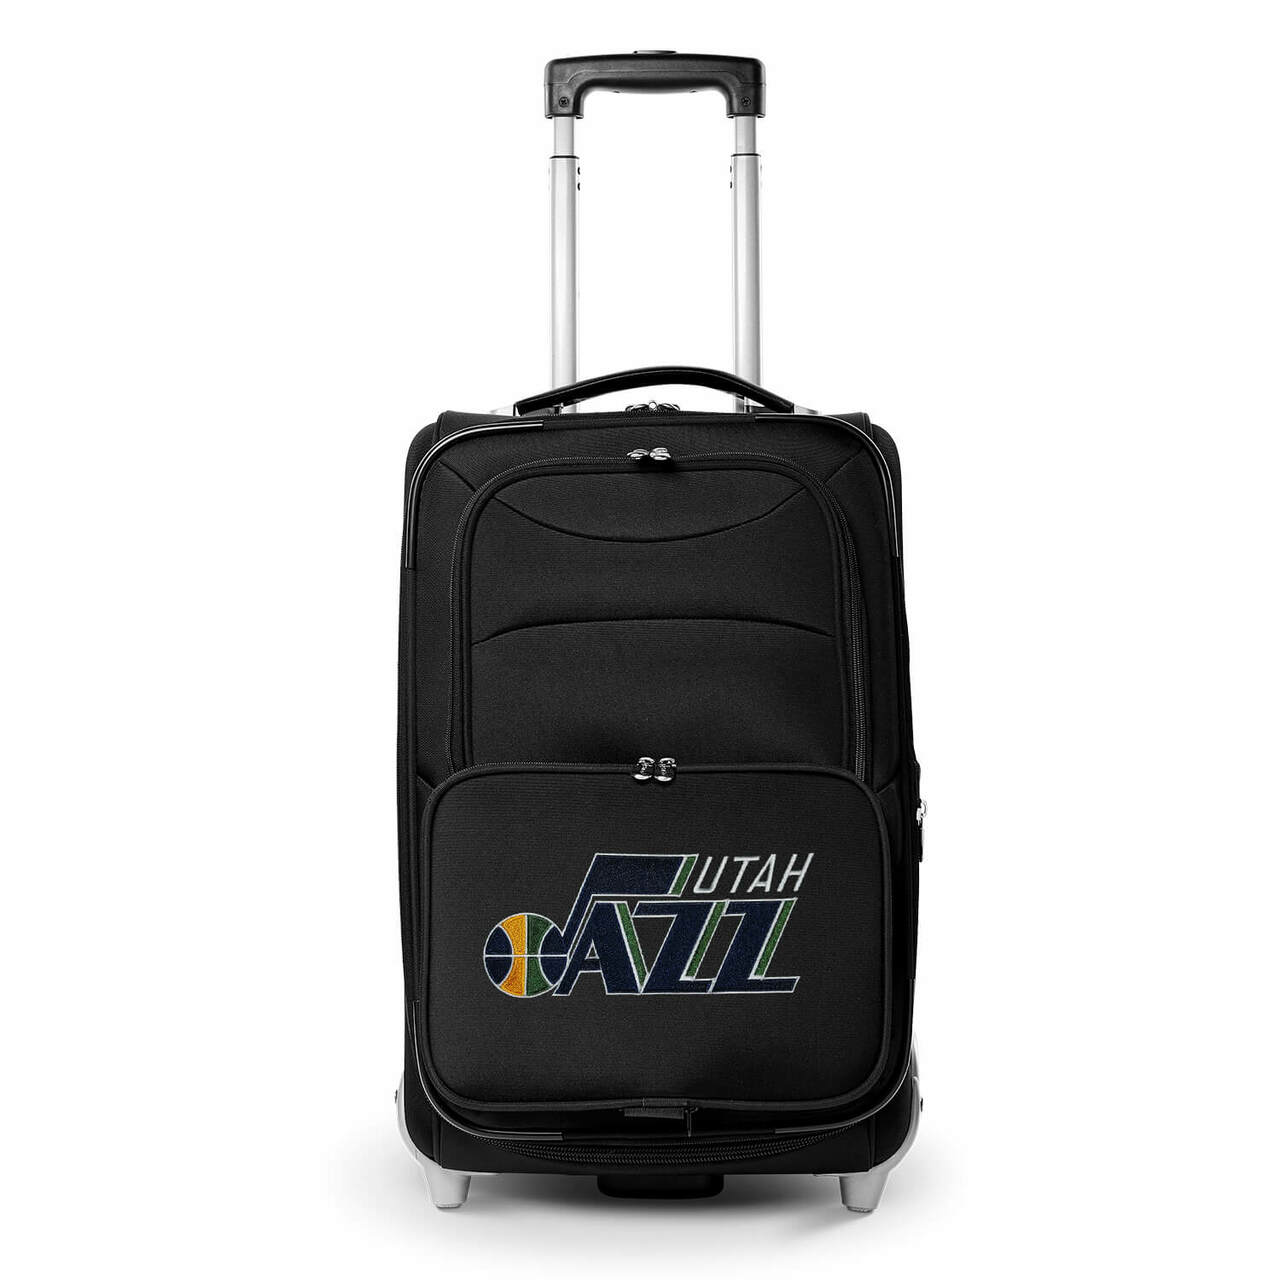 Jazz Carry On Luggage | Utah Jazz Rolling Carry On Luggage